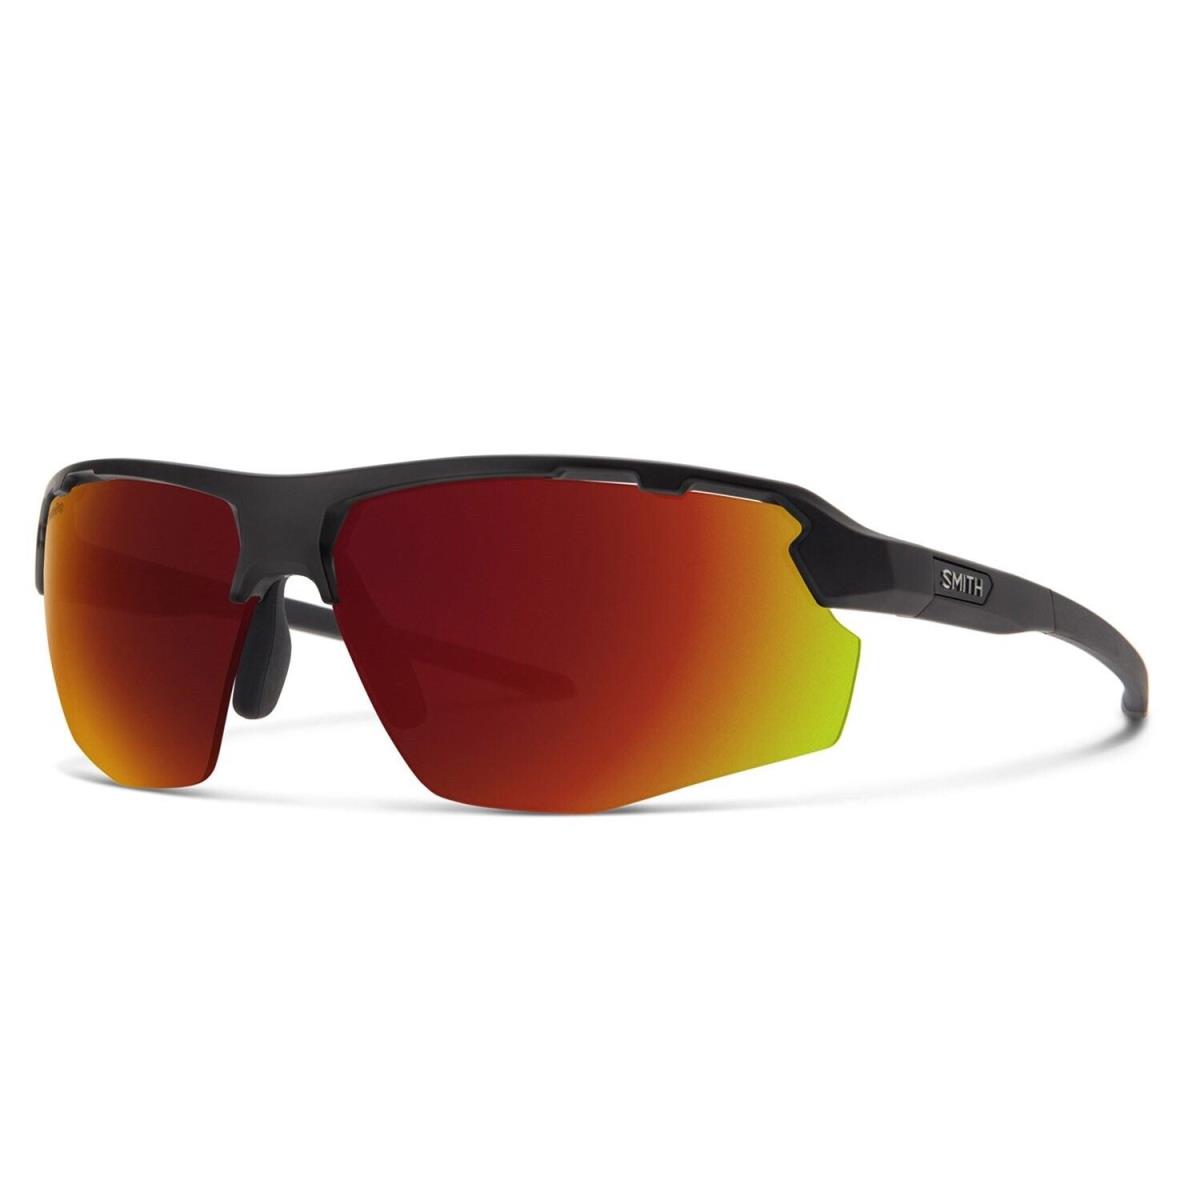 Smith Resolve Sunglasses Matte Black Frame Chromapop Red Mirror Lens +bonus